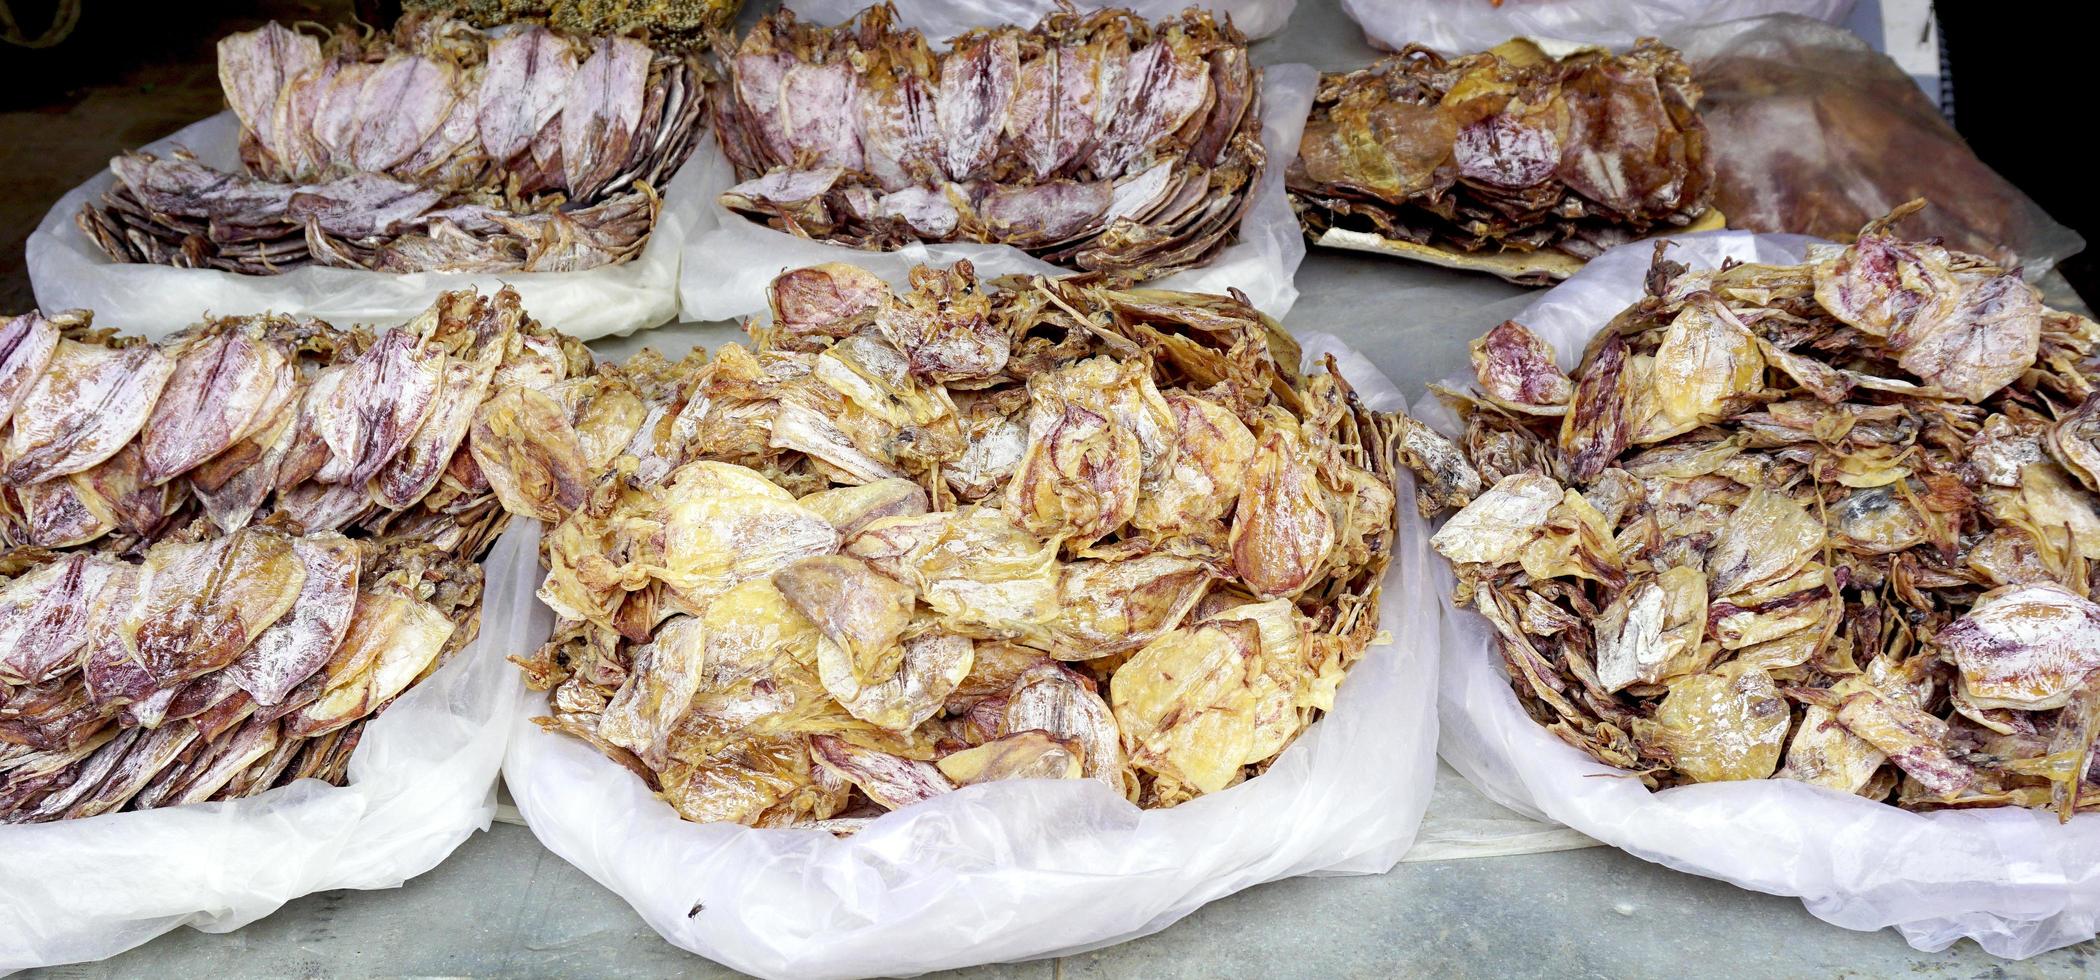 calamares secos en el mercado local fresco foto